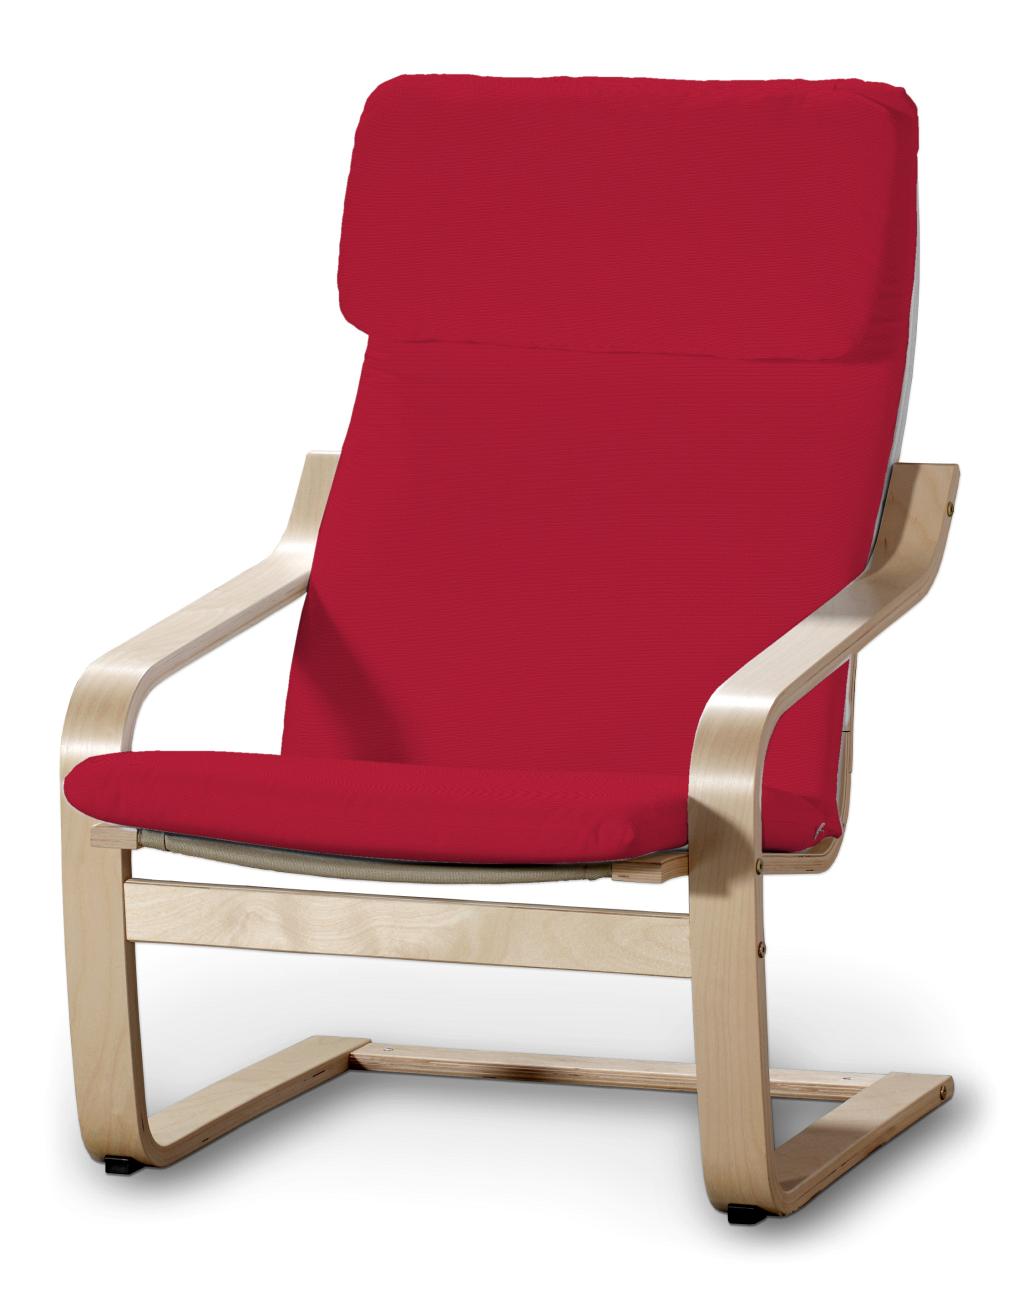 Dekoria IKEA kussen voor stoel Poäng I